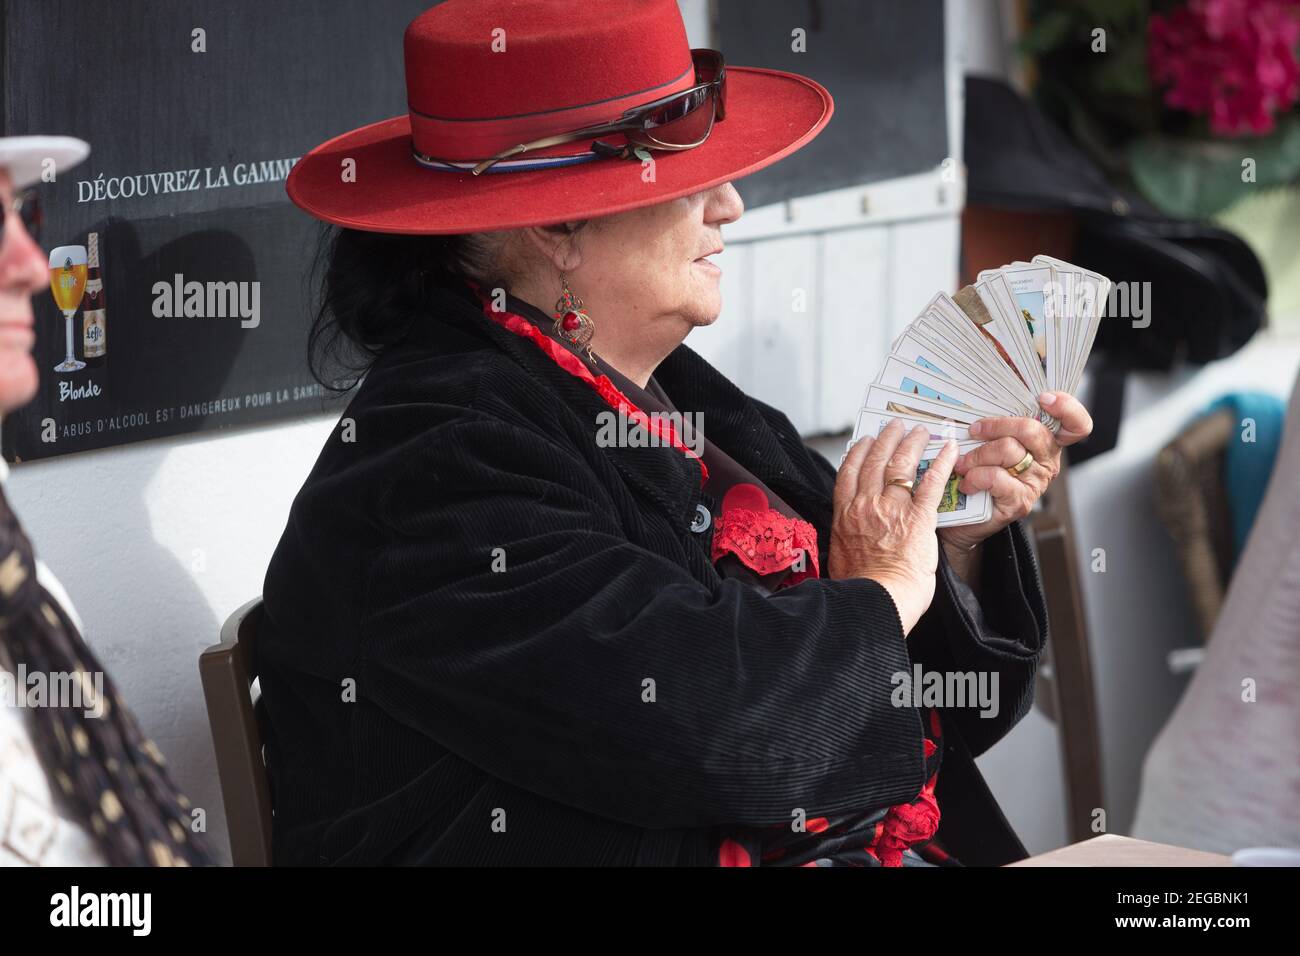 Woman holding Tarot Cards Stock Photo